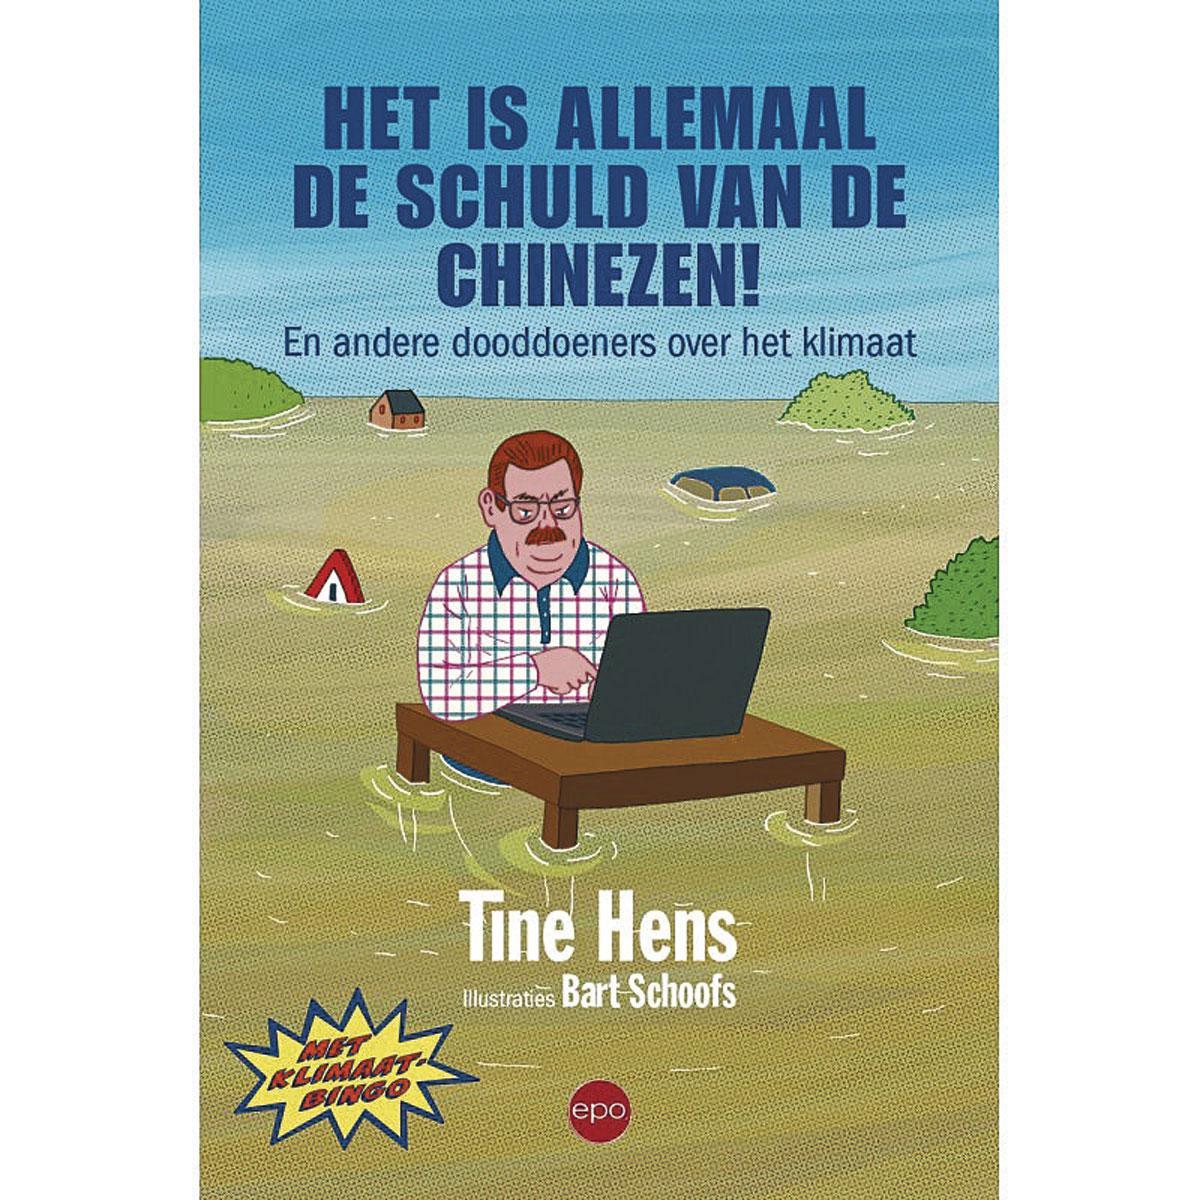 Het is allemaal de schuld van de Chinezen! En andere dooddoeners over het klimaat door Tine Hens. Uitgegeven door EPO, 2021. 248 blz. ISBN 9789462671928